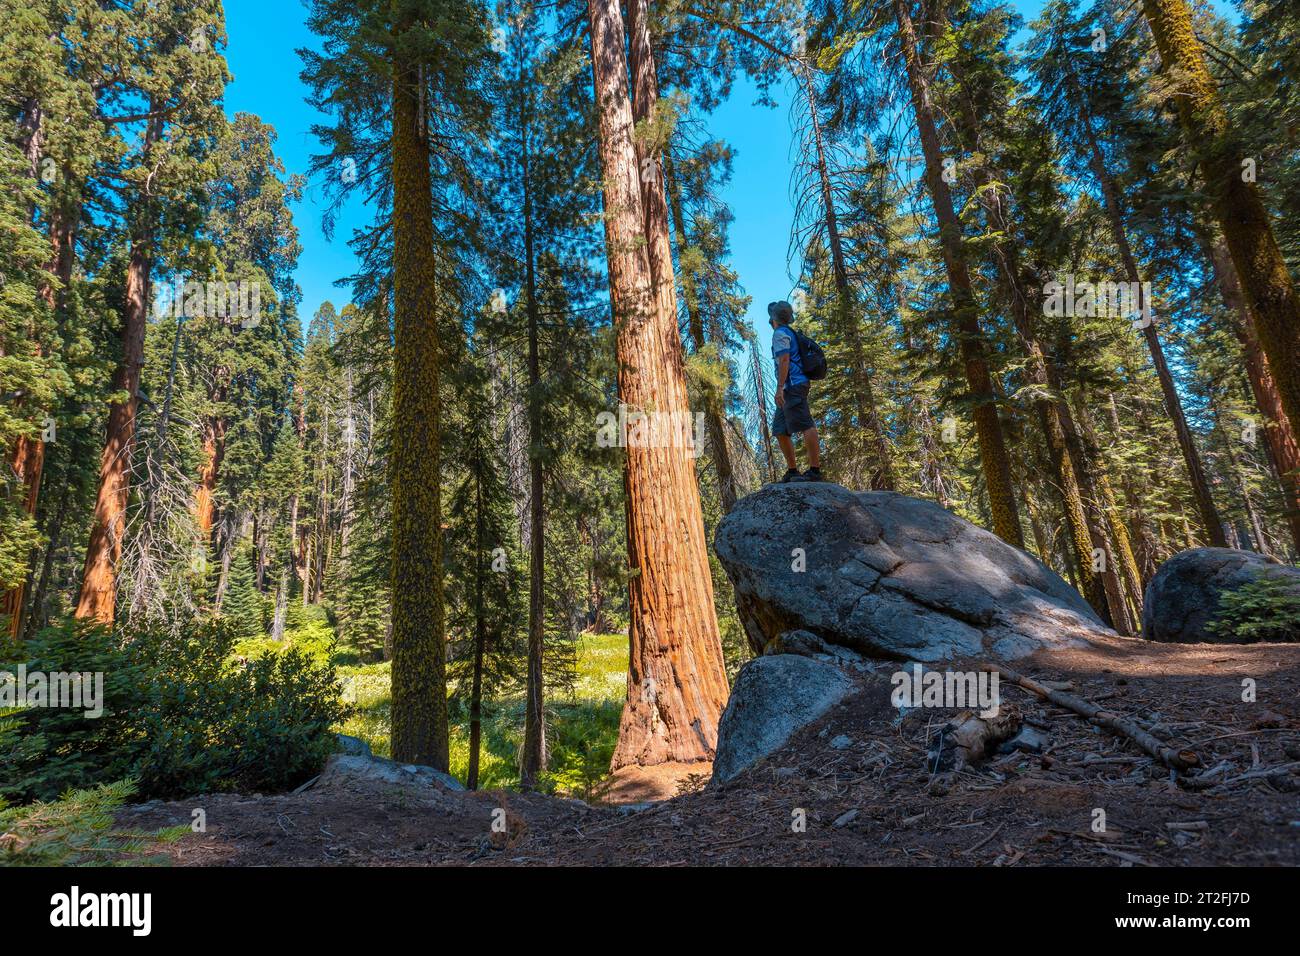 Un joven con sombrero verde encima de una piedra junto a un árbol gigante en el Parque Nacional Sequoia, California. Estados Unidos Foto de stock